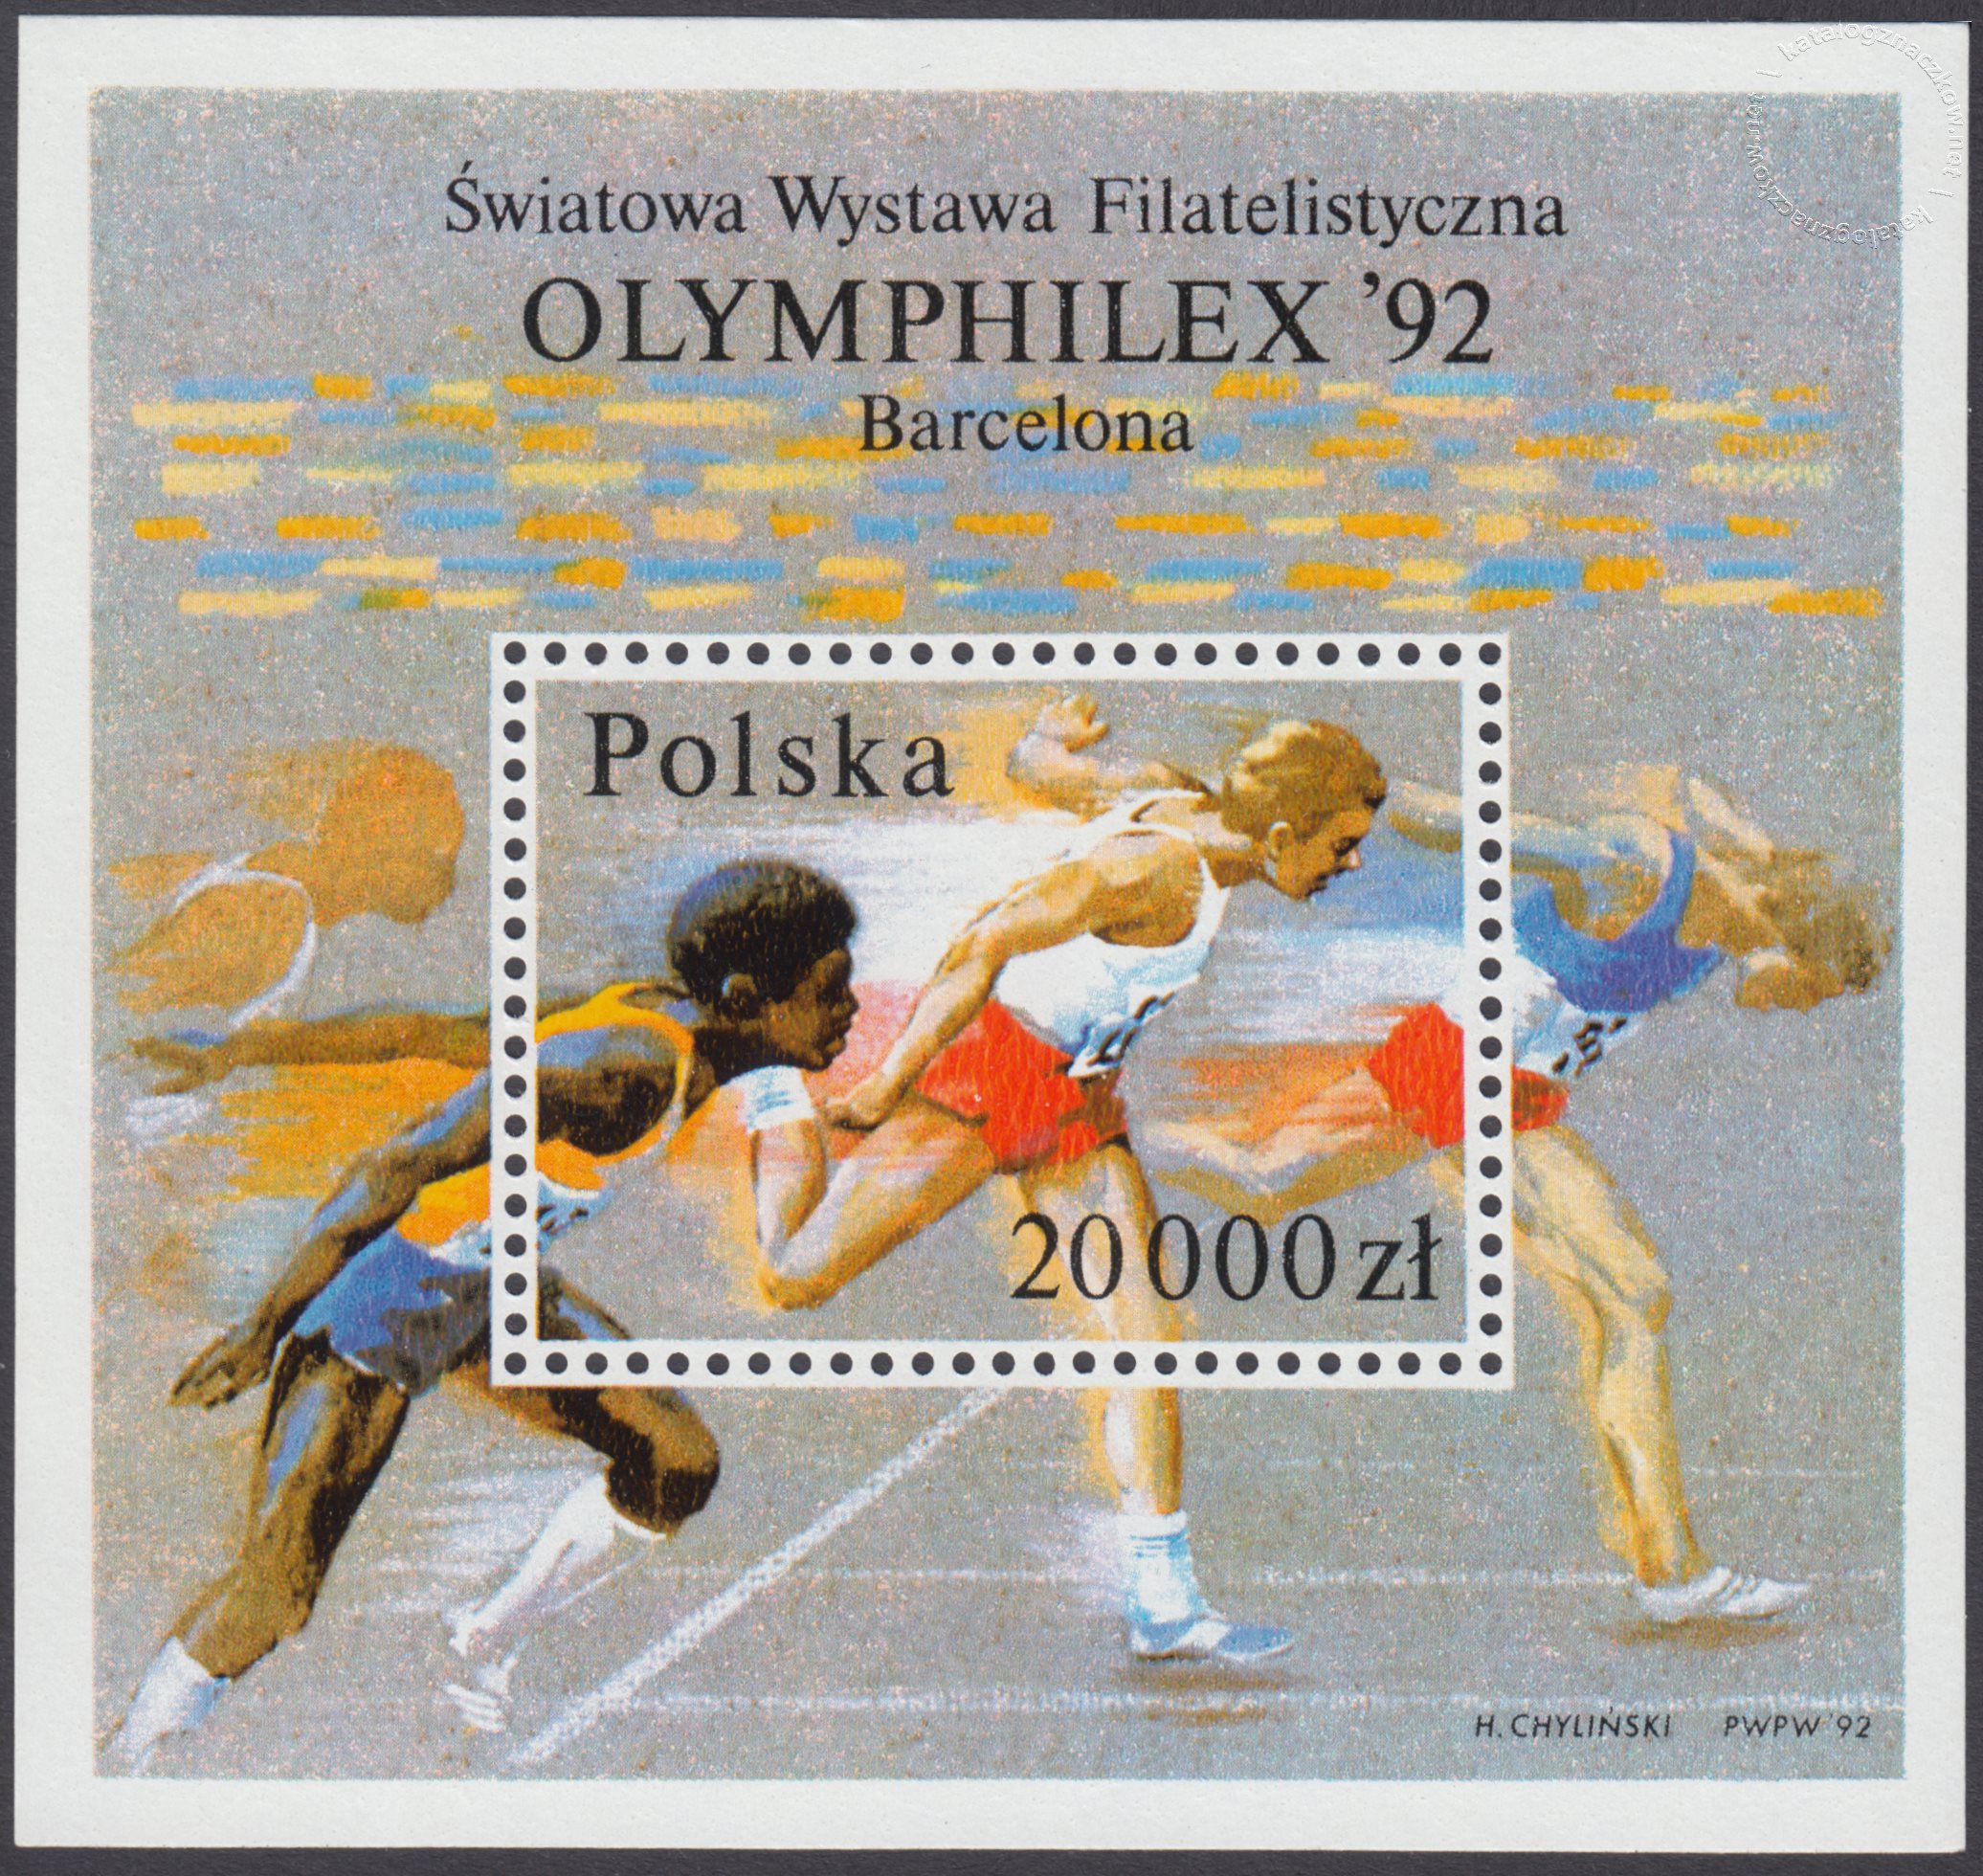 Światowa Wystawa Filatelistyczna Olymphilex 92 w Barcelonie – Blok 104B